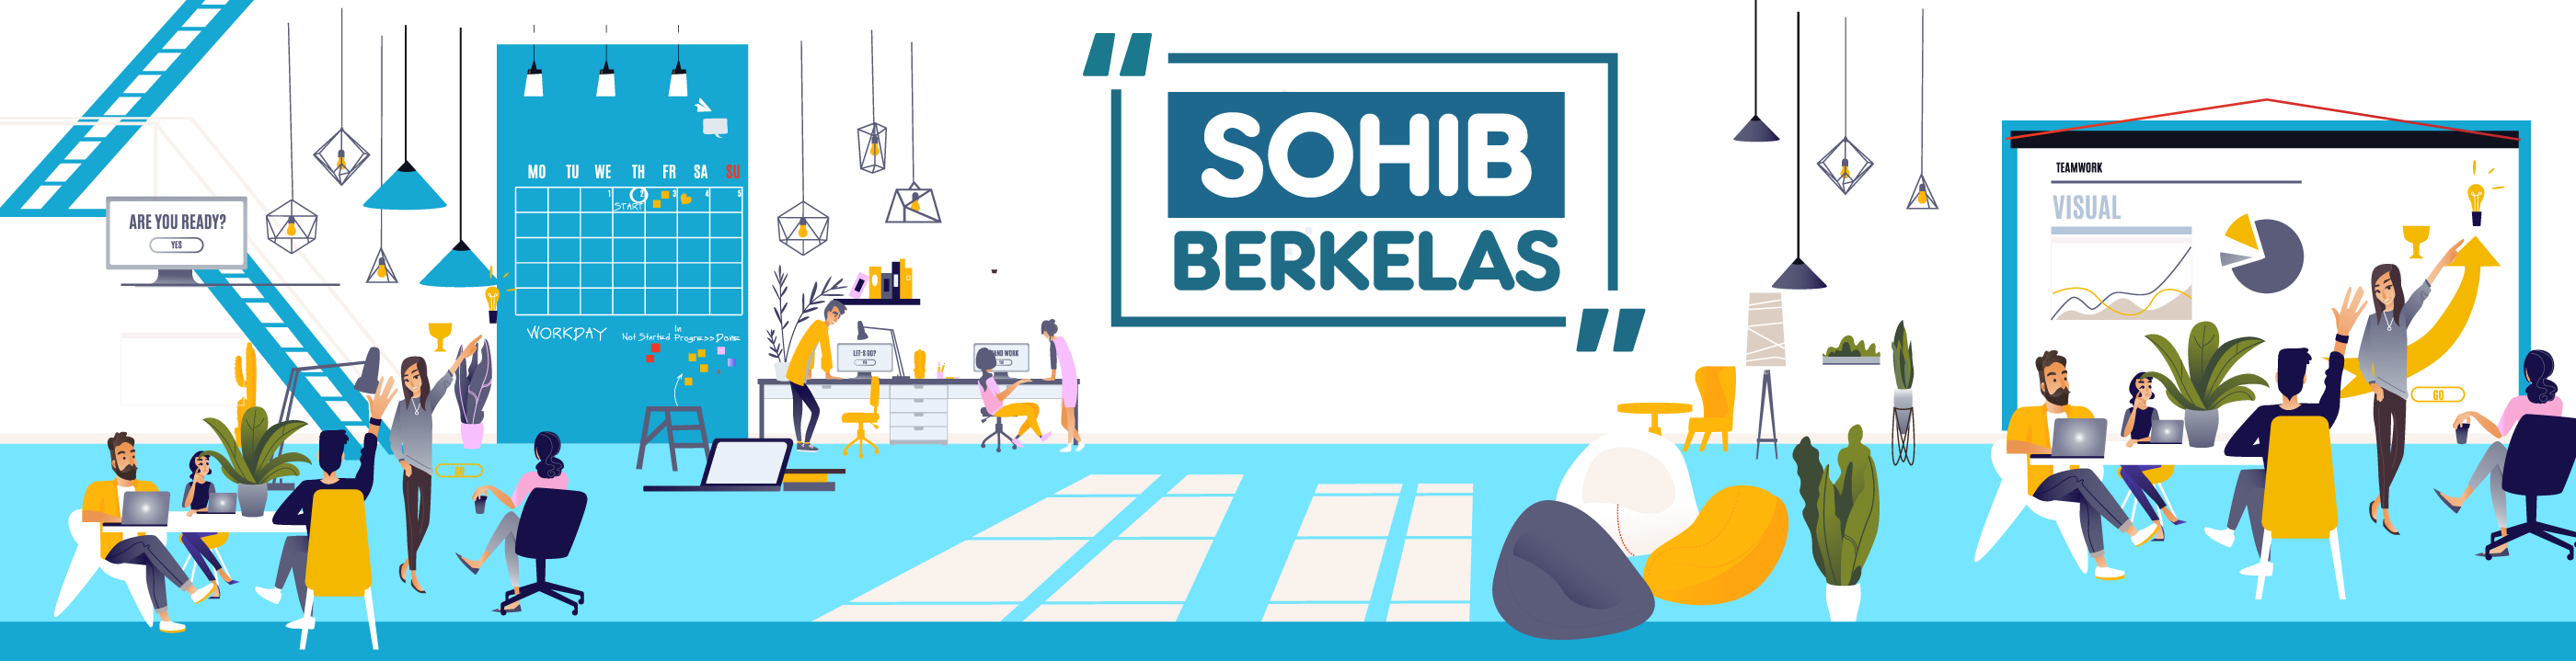 SohIB Berkelas Palembang 2018_banner_1535443670_sohib_offline.png